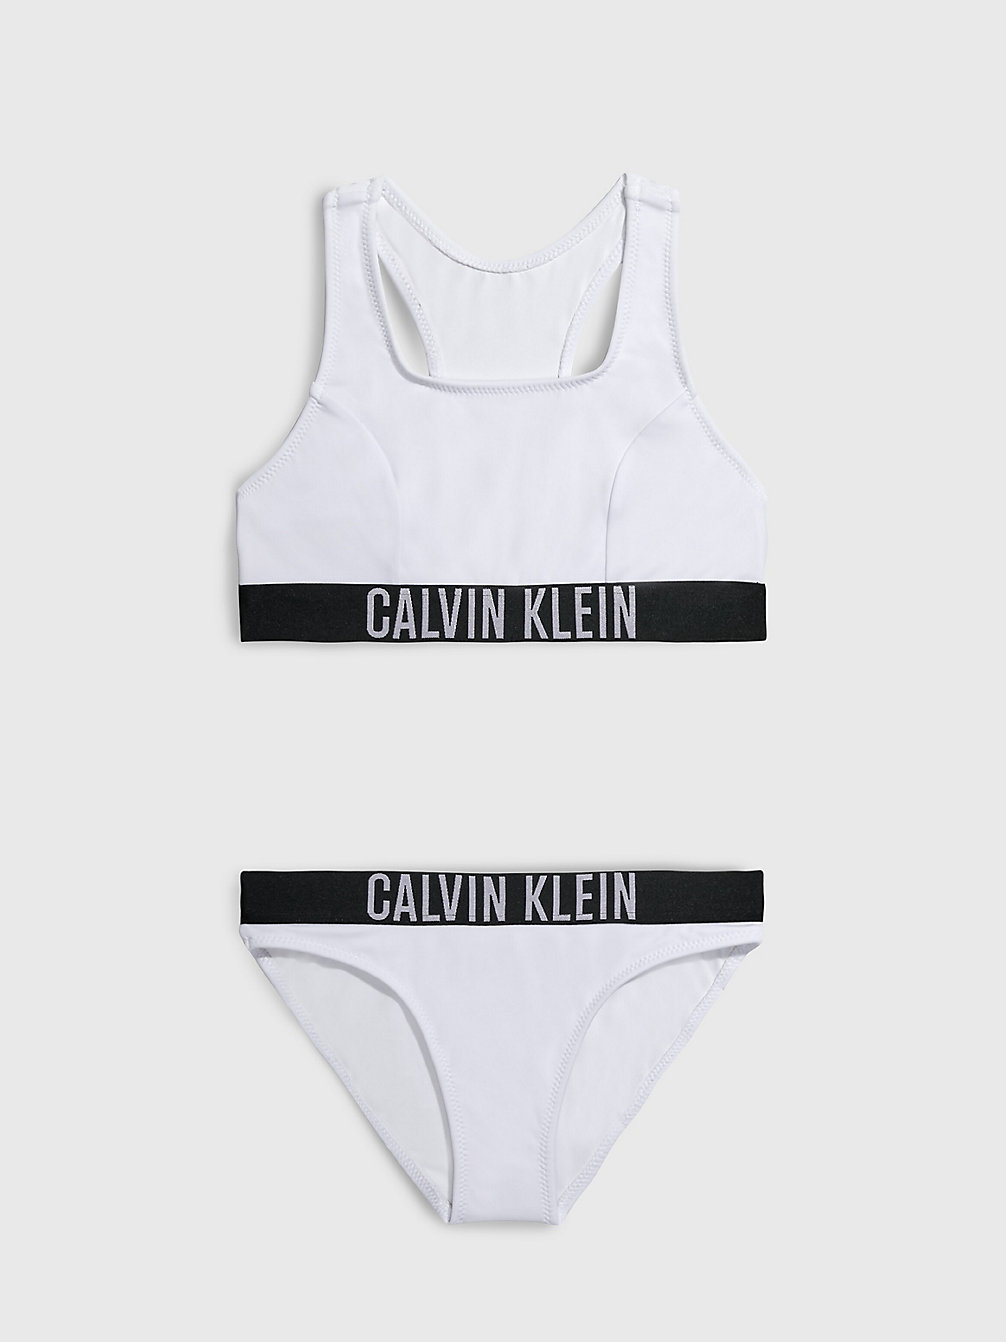 PVH CLASSIC WHITE > Dziewczęcy Zestaw Bikini Z Braletką- Intense Power > undefined Dziewczynki - Calvin Klein